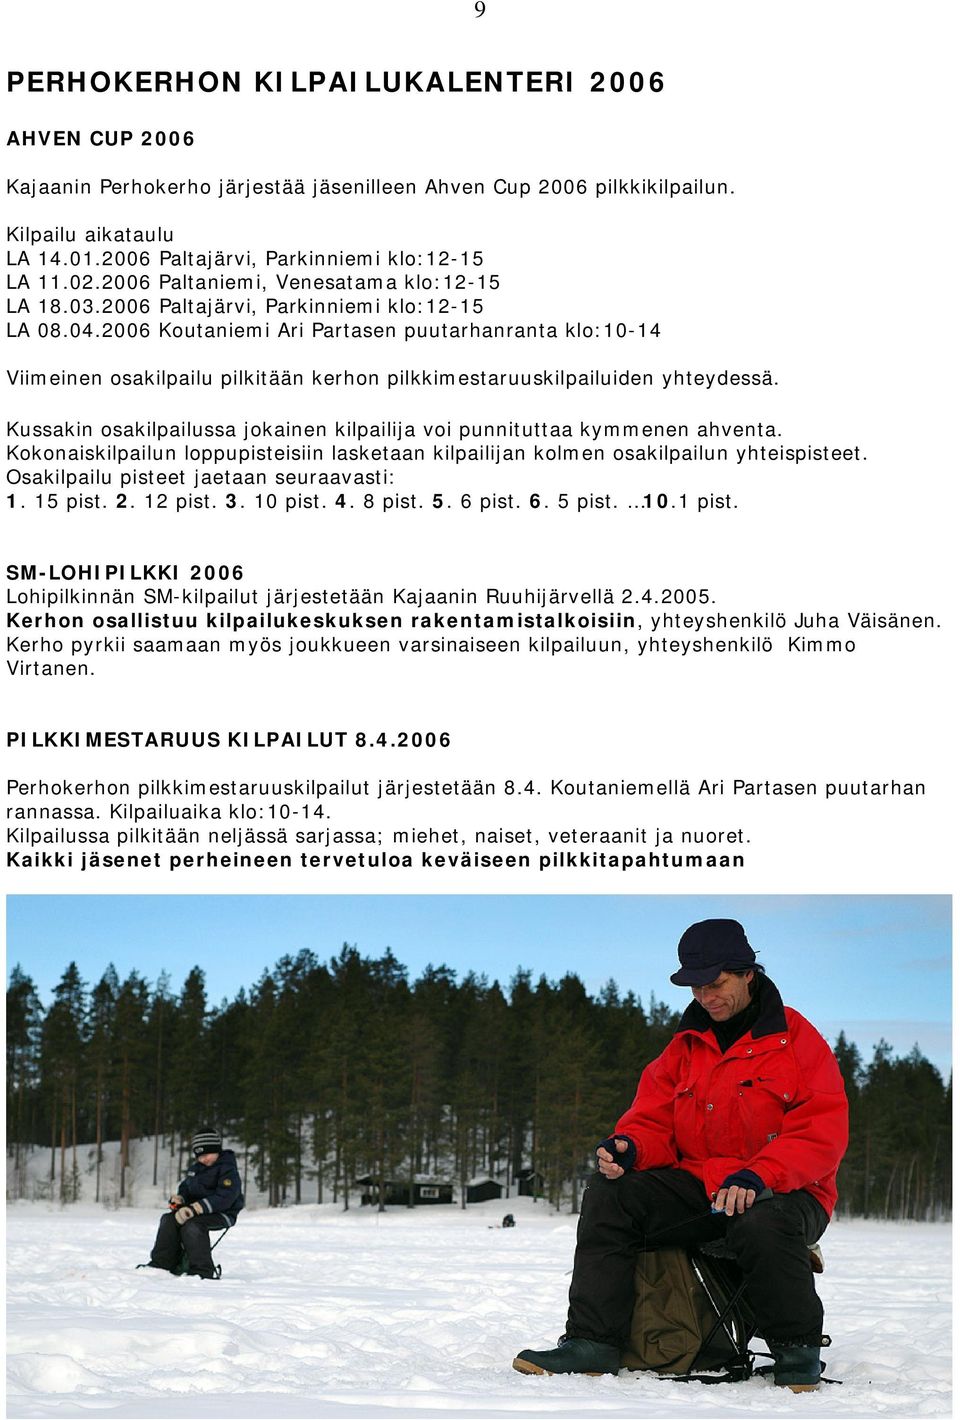 2006 Koutaniemi Ari Partasen puutarhanranta klo:10-14 Viimeinen osakilpailu pilkitään kerhon pilkkimestaruuskilpailuiden yhteydessä.